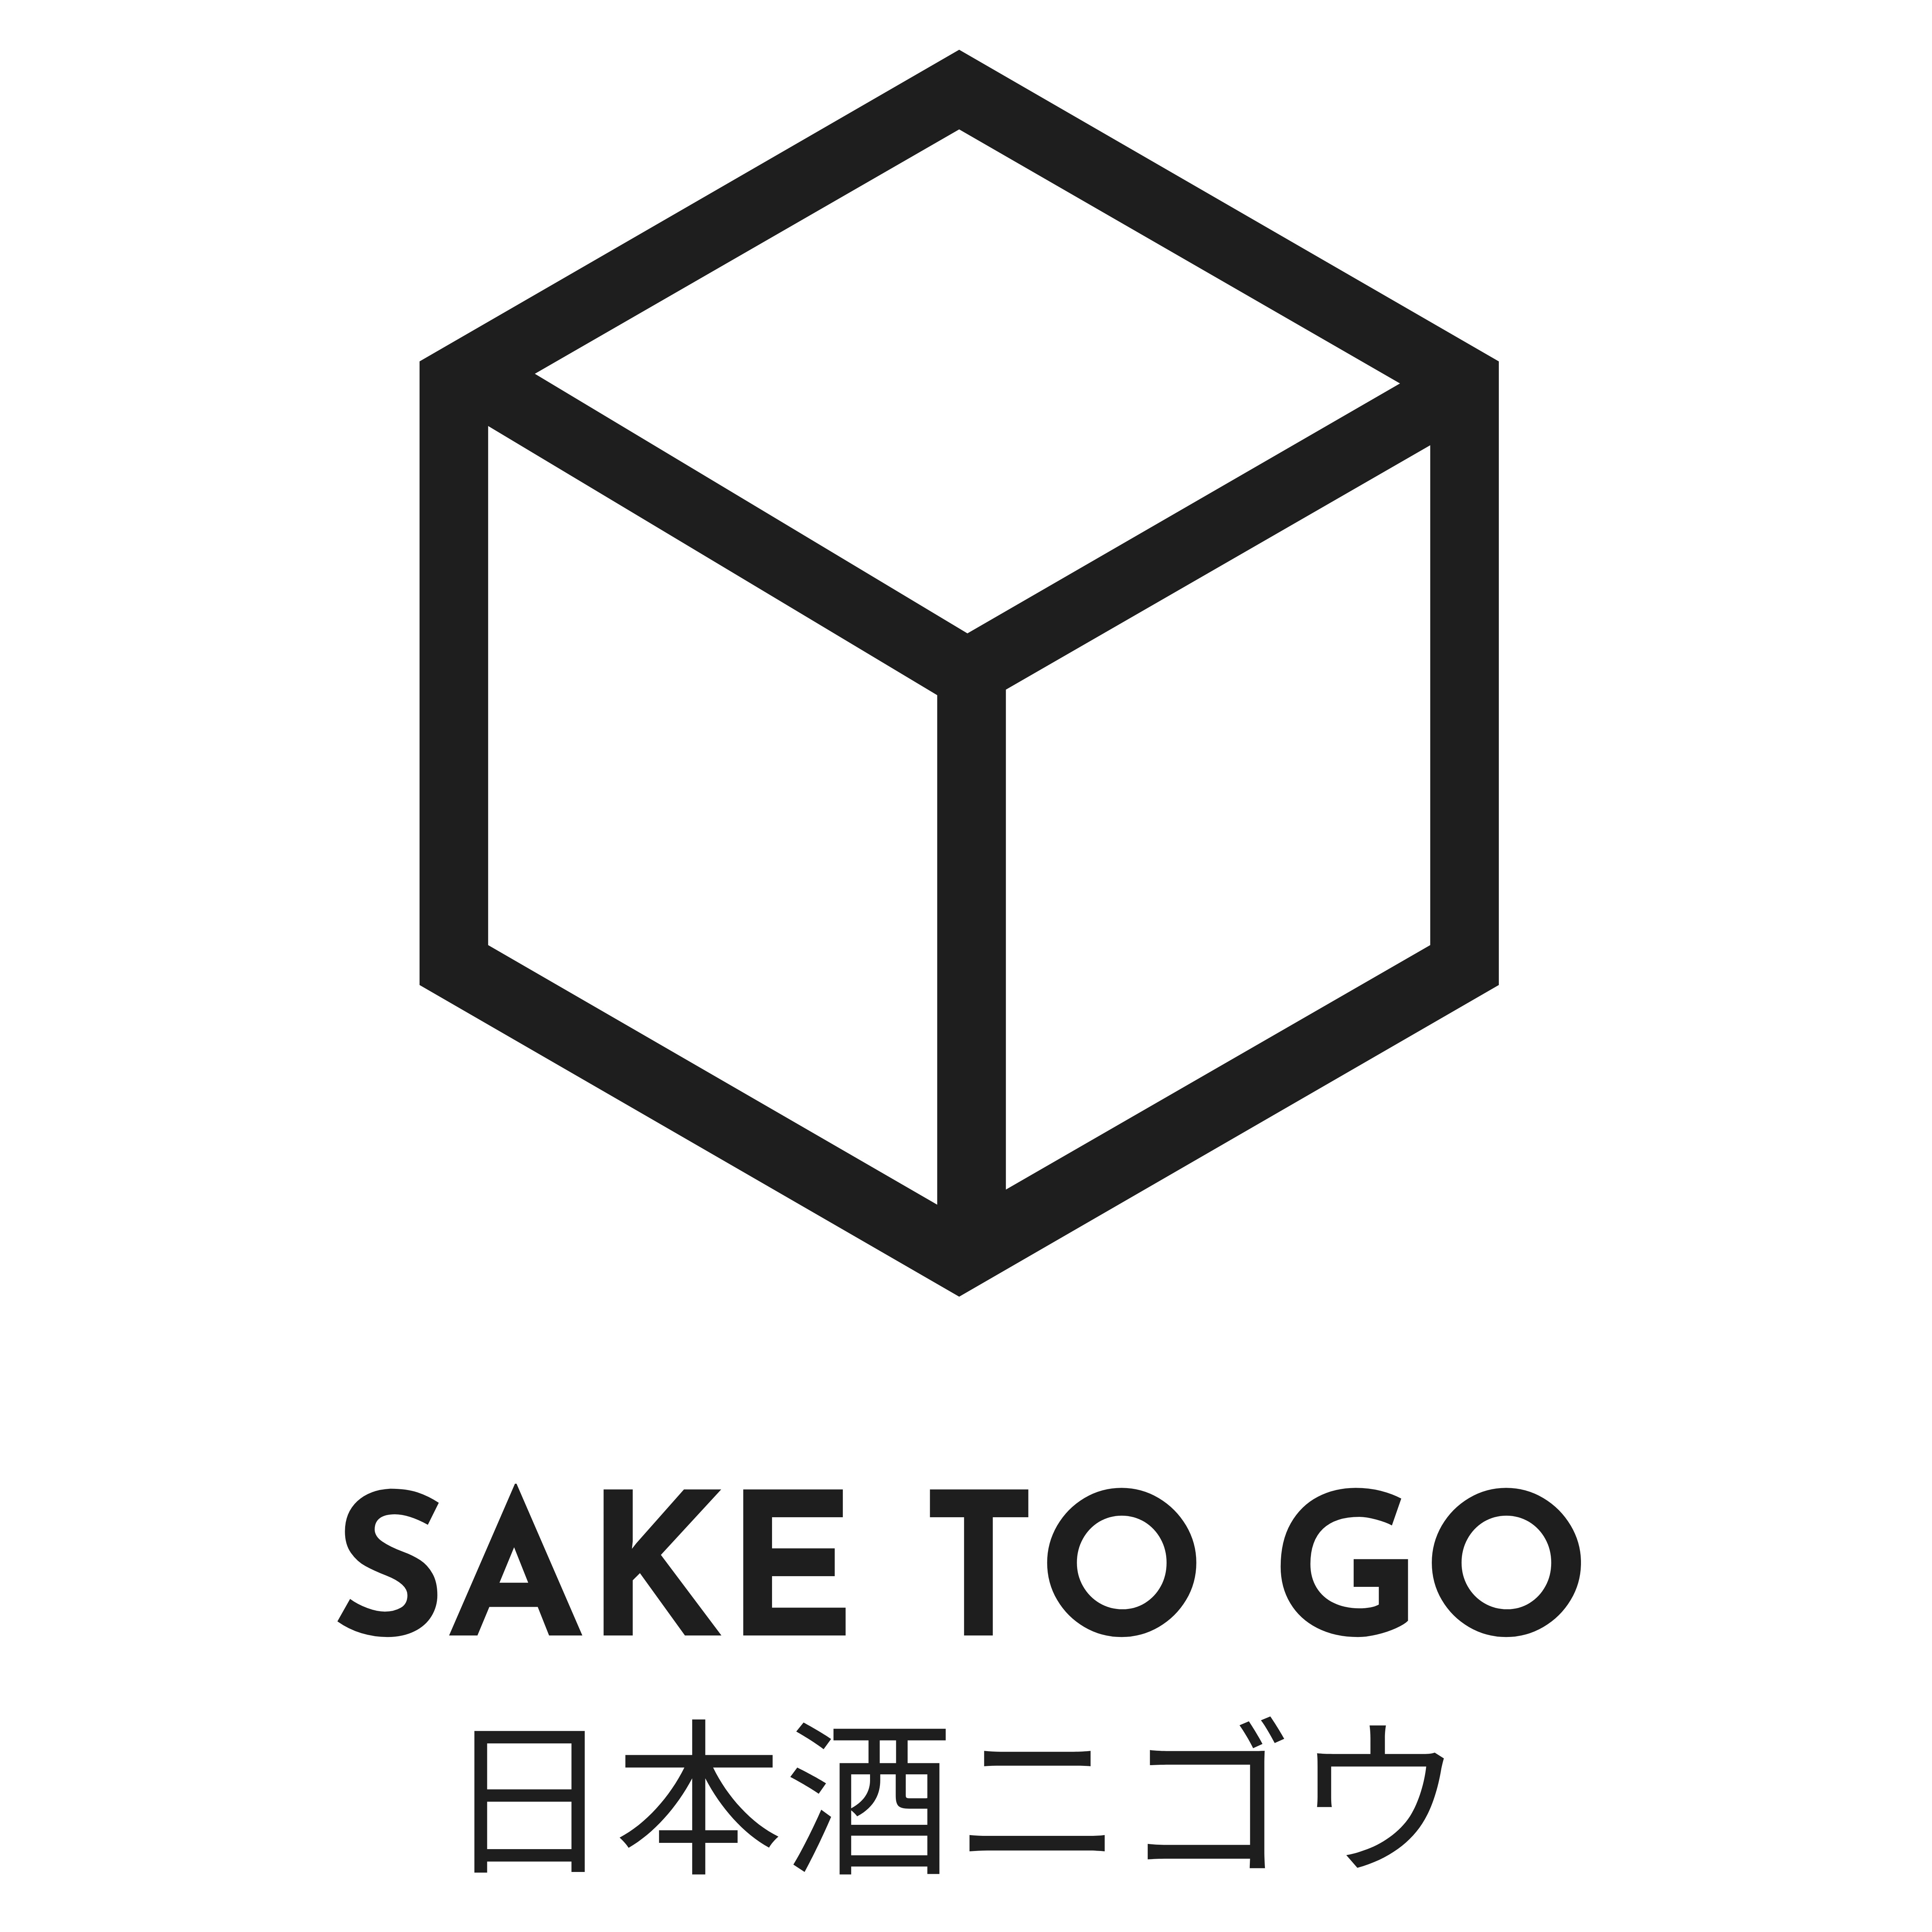 Sake to Go